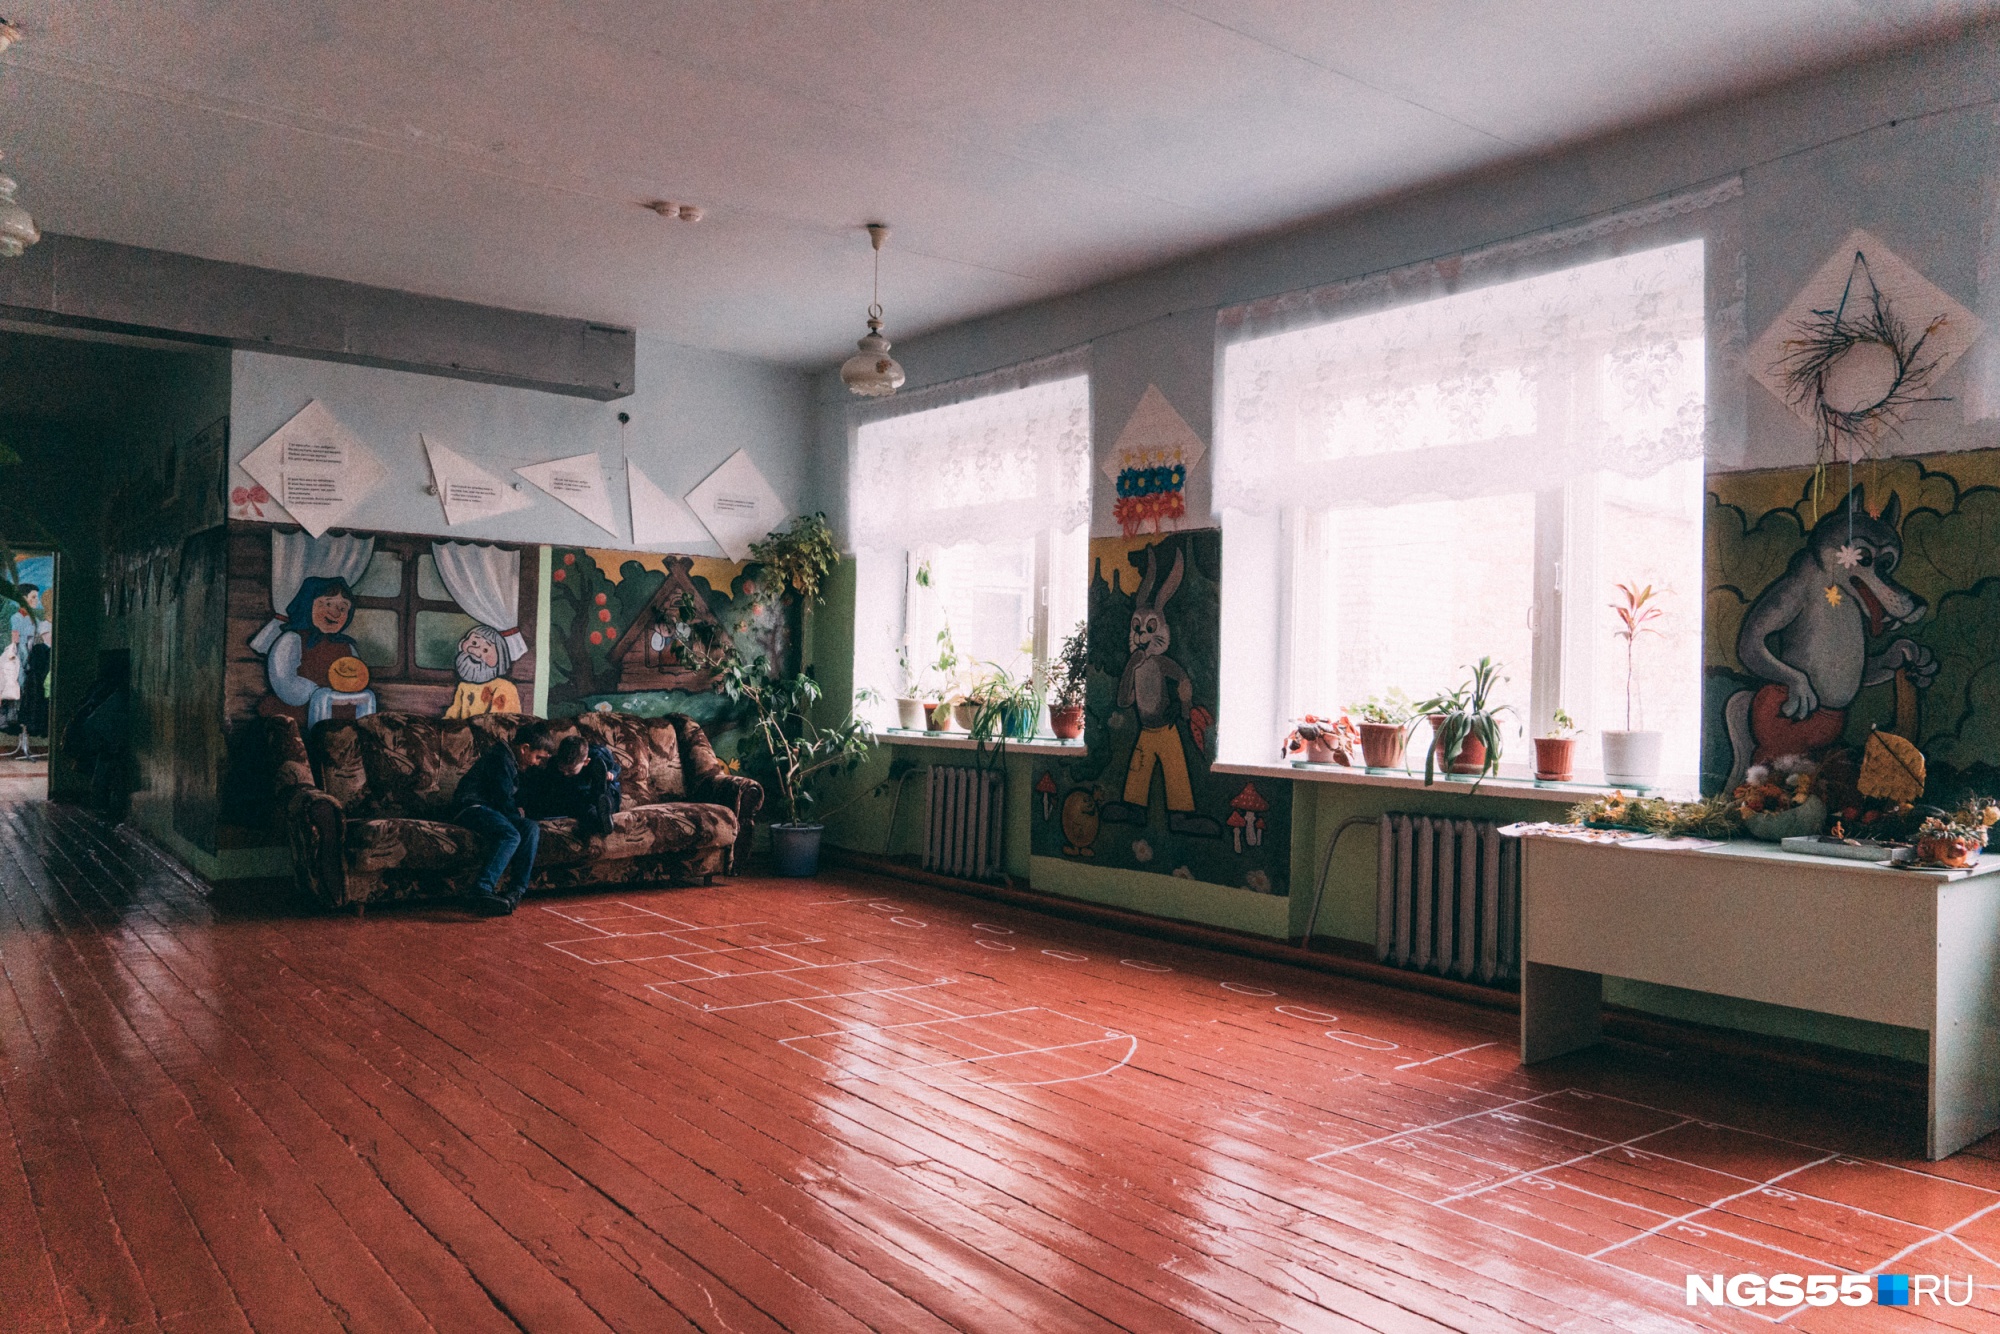 На стенах сельской школы поселились герои советских мультфильмов